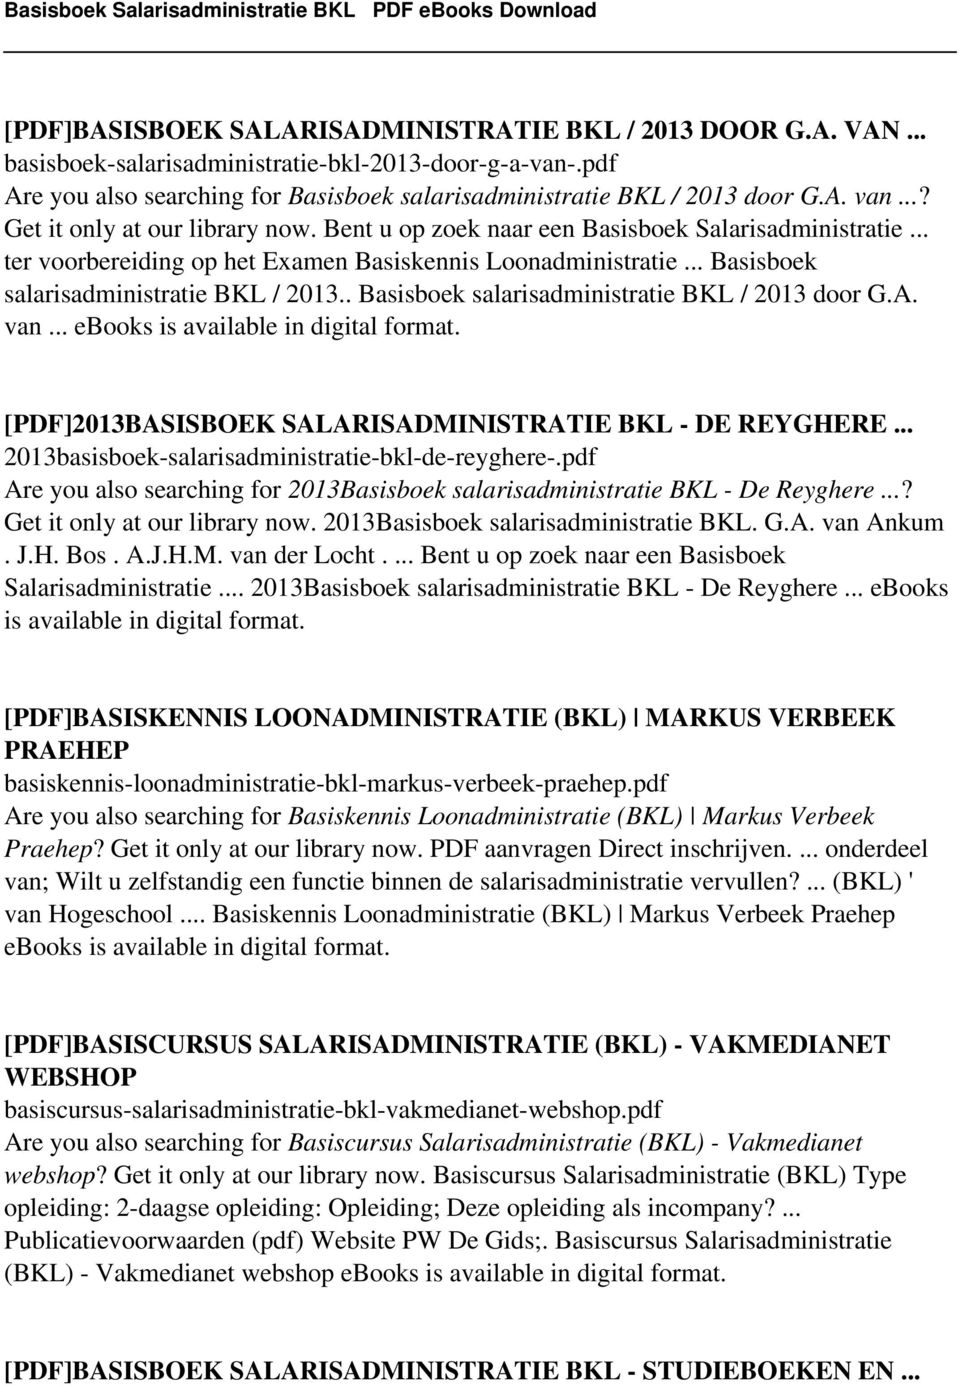 . Basisboek salarisadministratie BKL / 2013 door G.A. van... [PDF]2013BASISBOEK SALARISADMINISTRATIE BKL - DE REYGHERE... 2013basisboek-salarisadministratie-bkl-de-reyghere-.